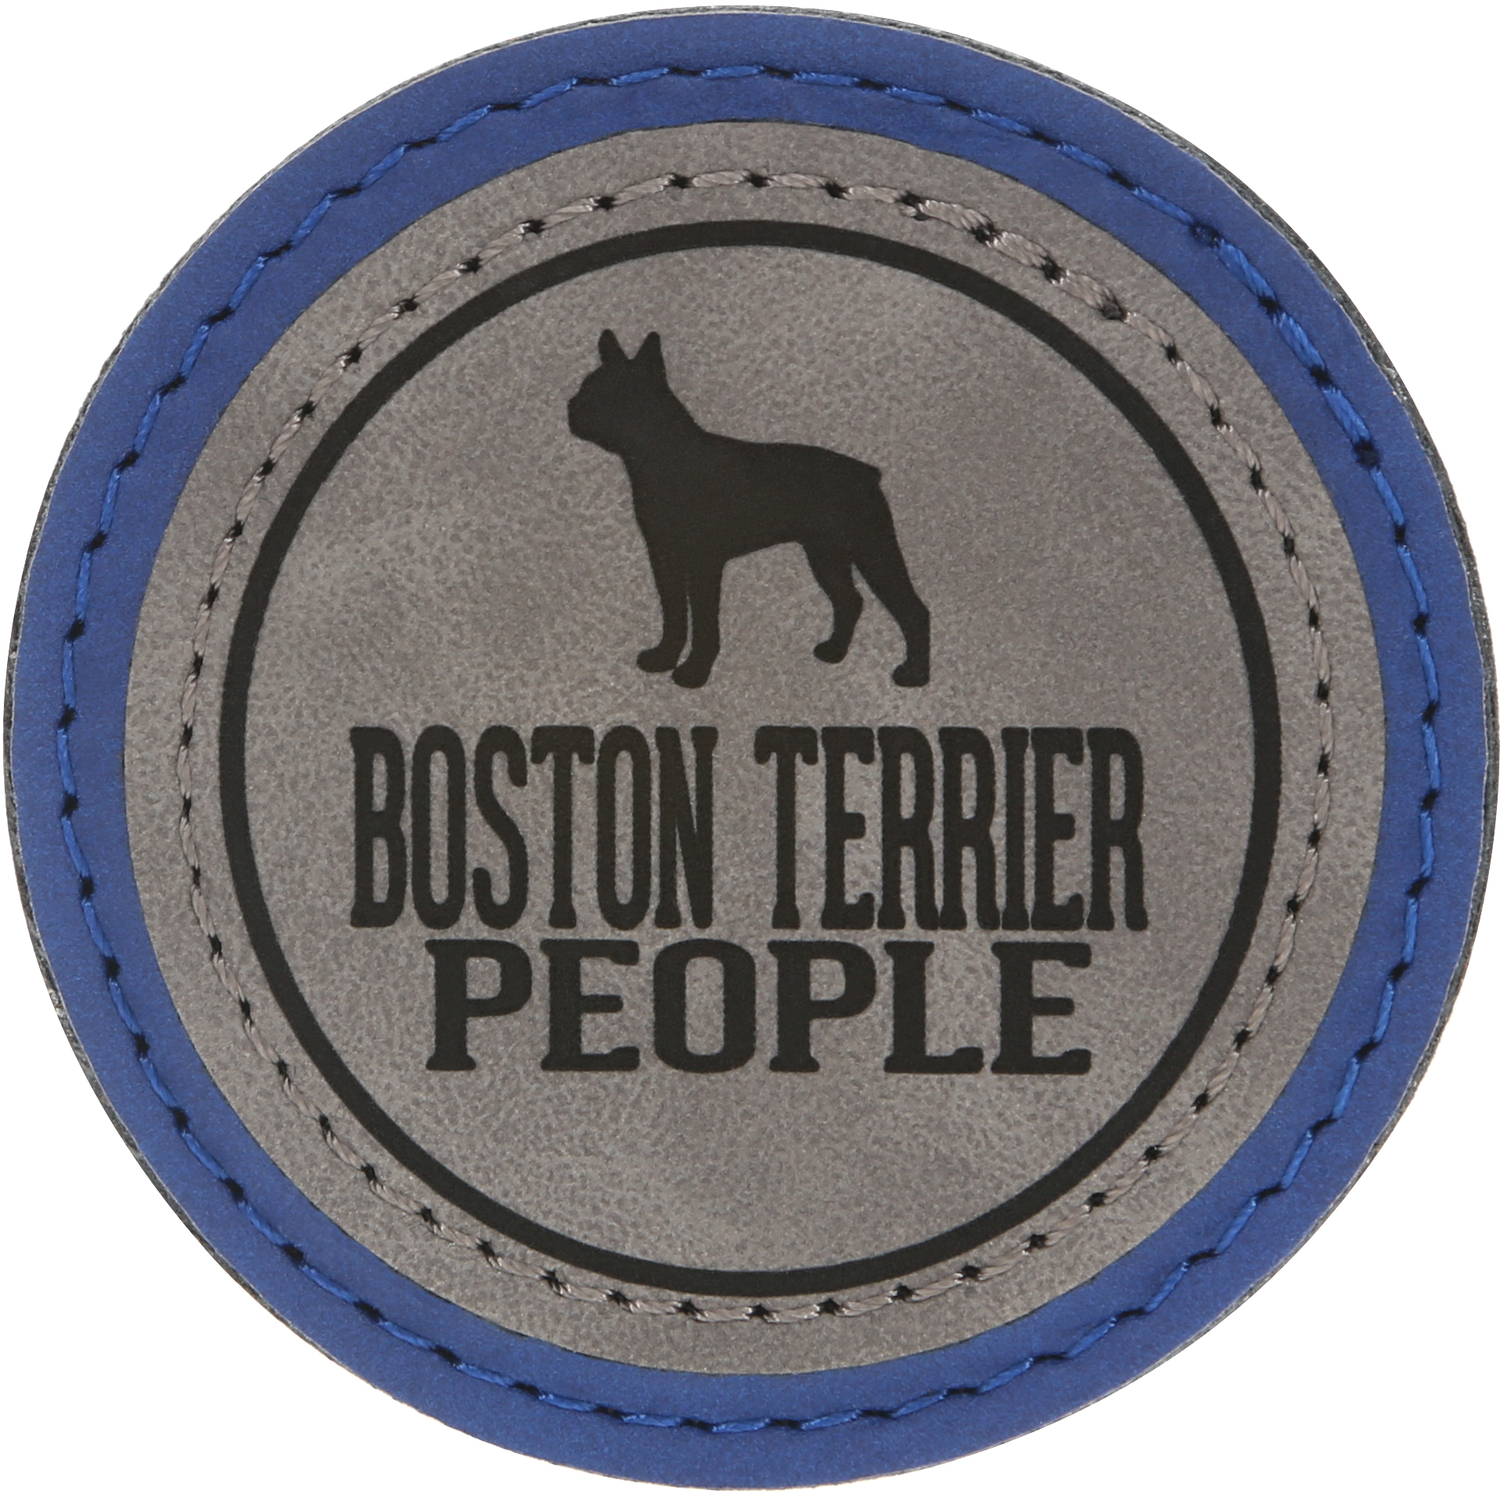 Boston Terrier People by We Pets - Boston Terrier People - 2.5" Magnet